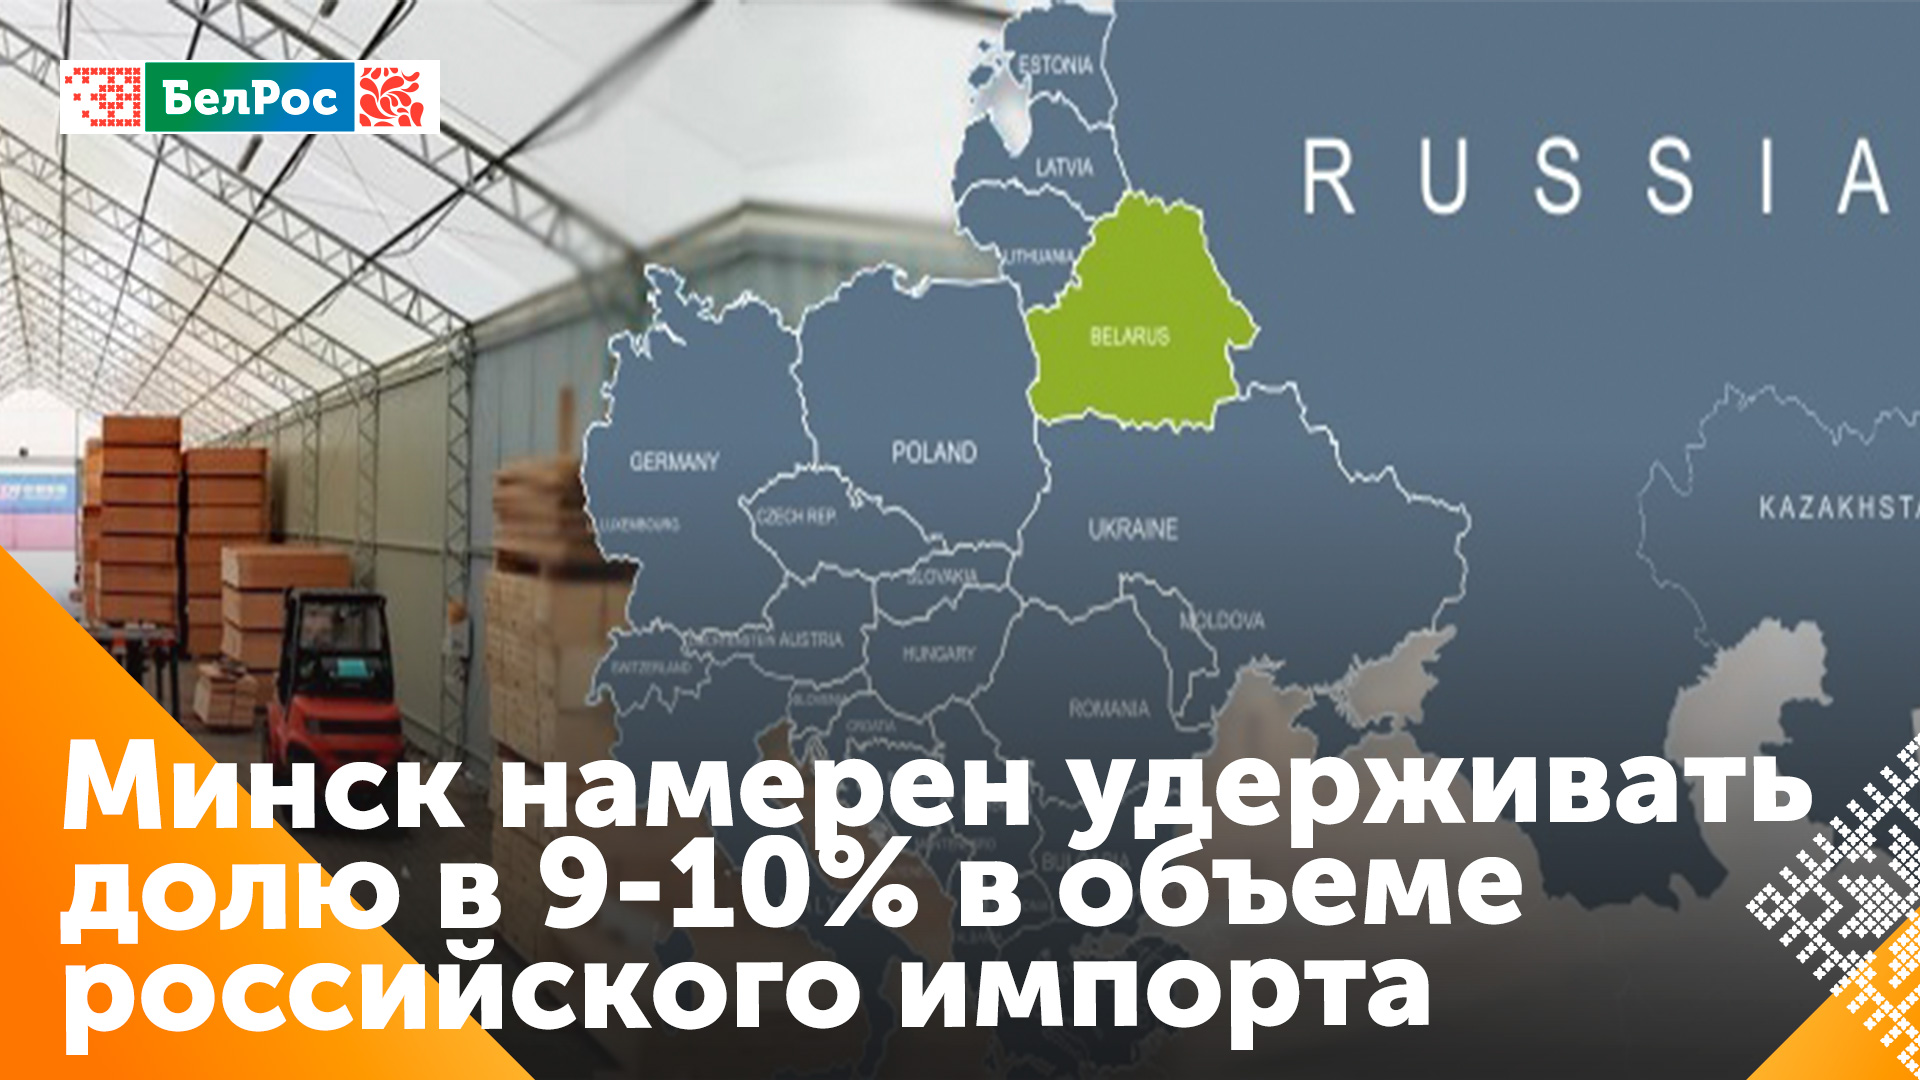 Головченко: для Беларуси в импорте России должна быть не менее 10%